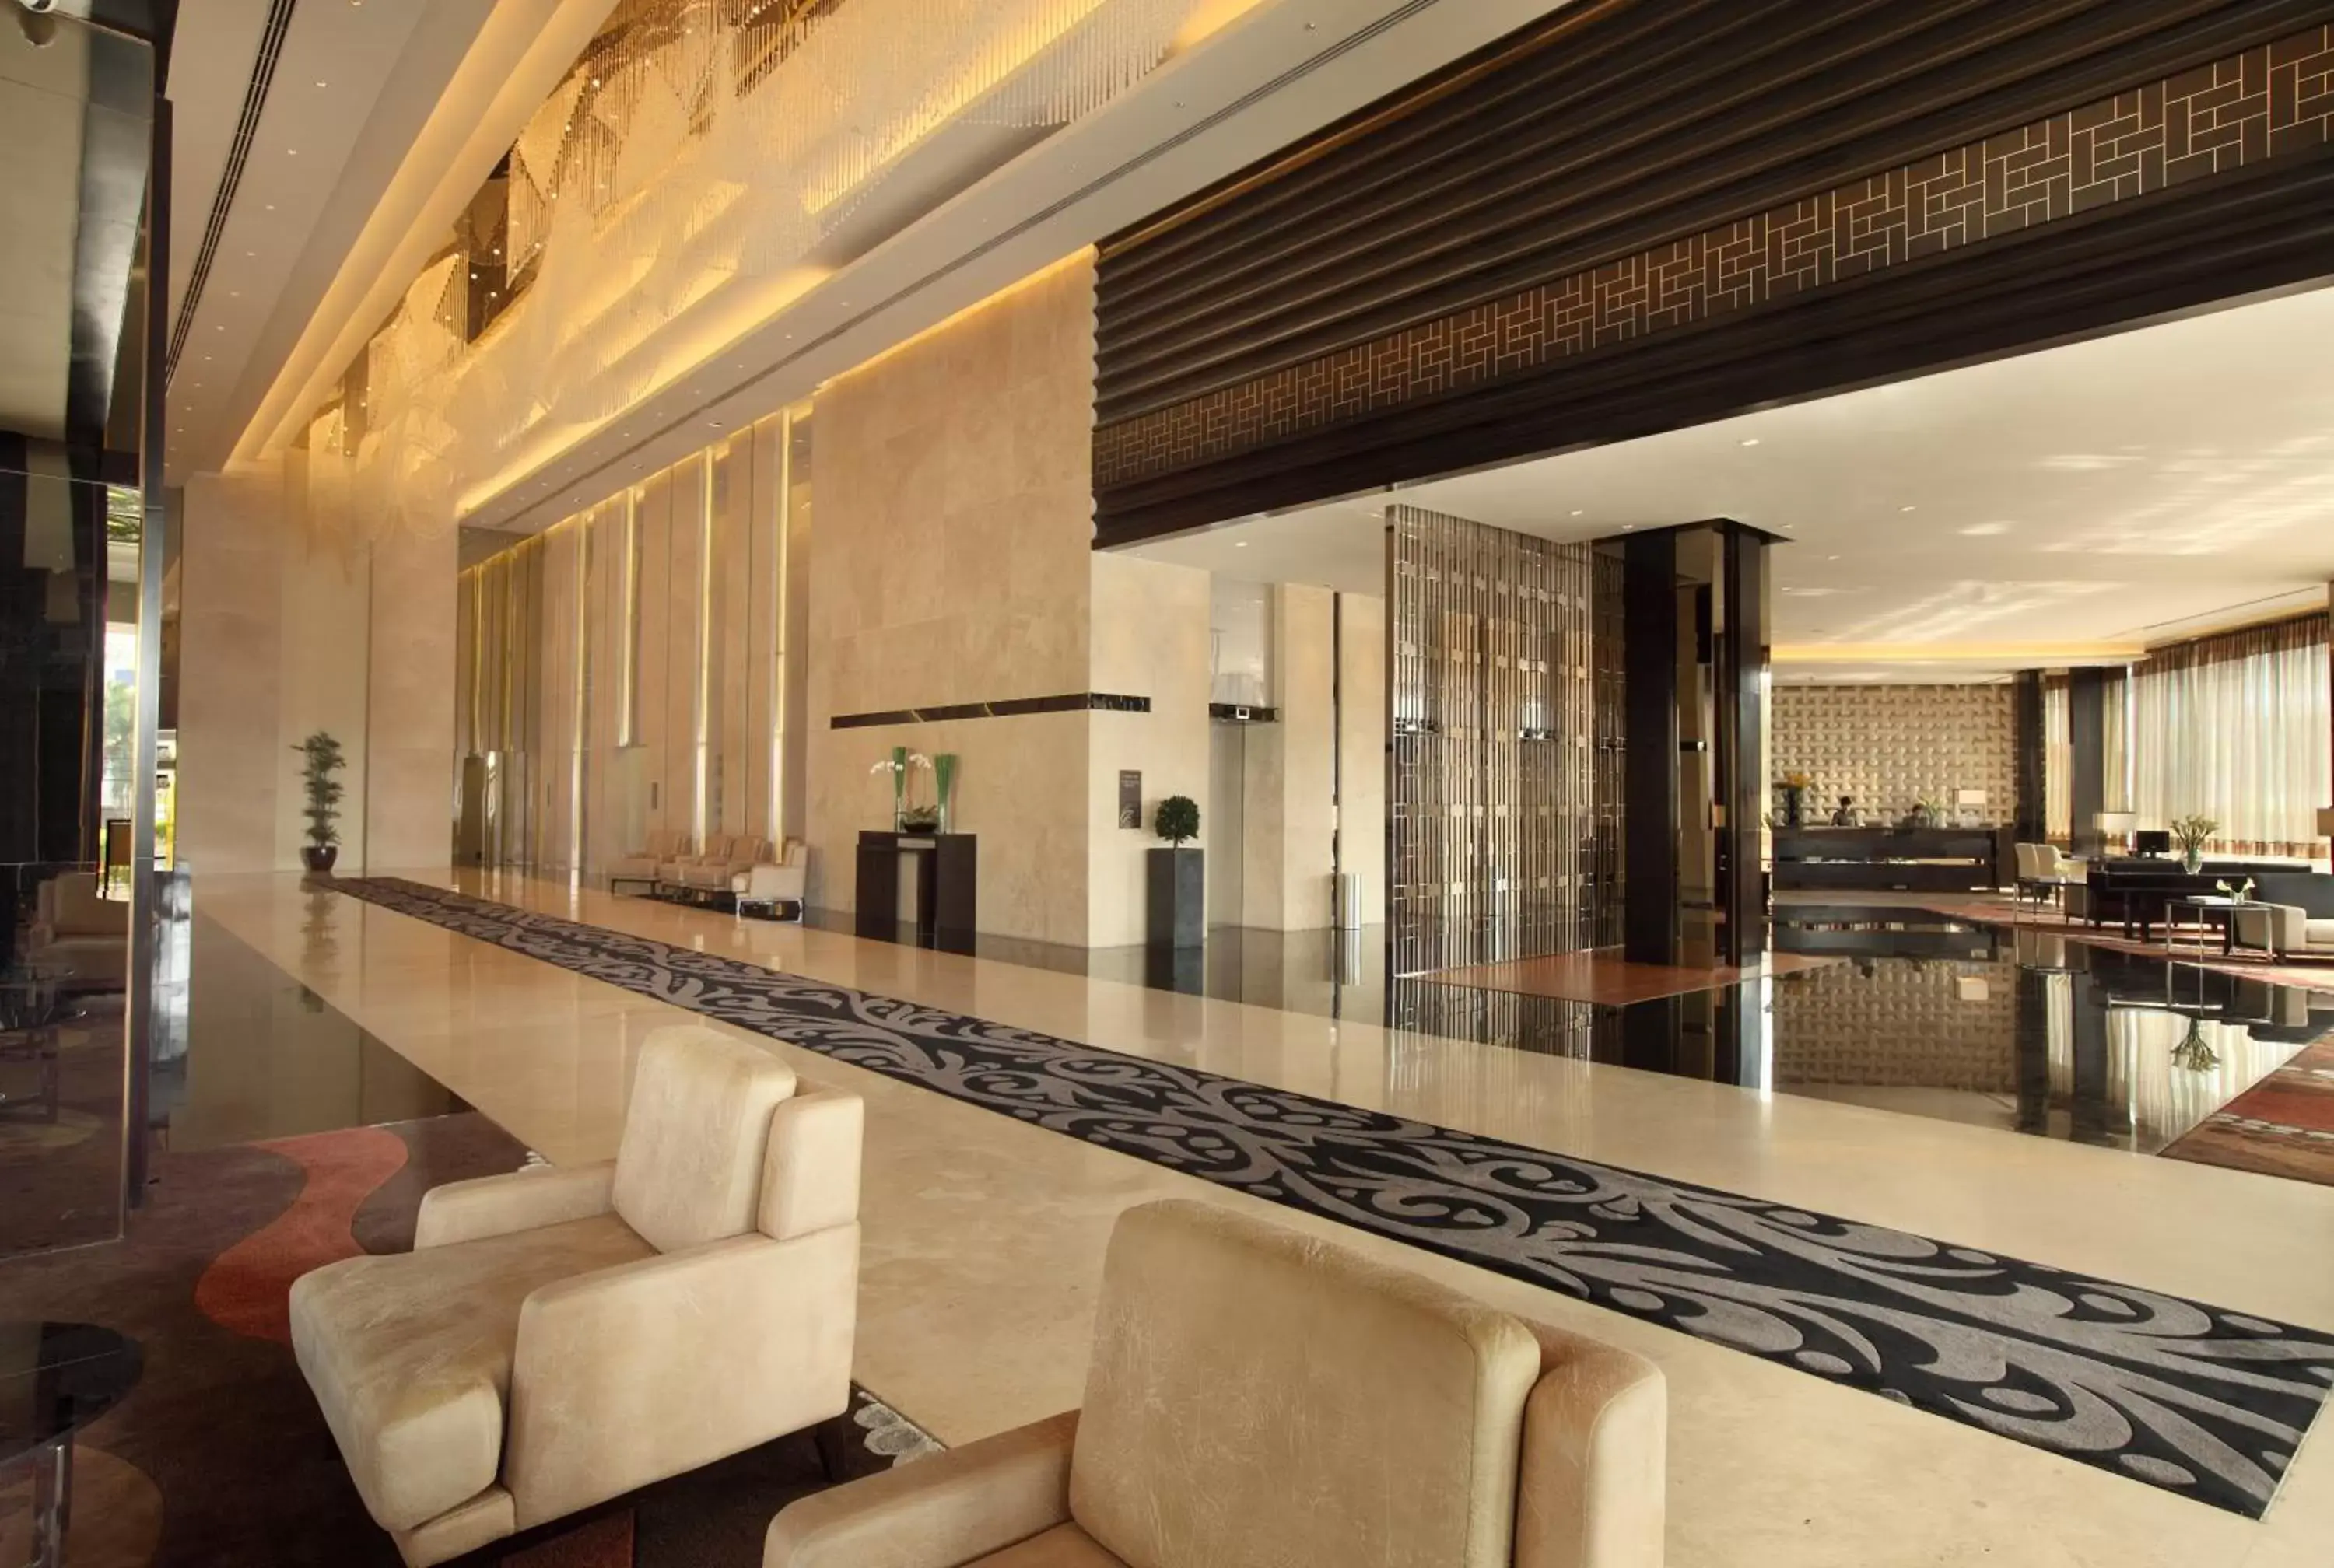 Lobby or reception in PO Hotel Semarang